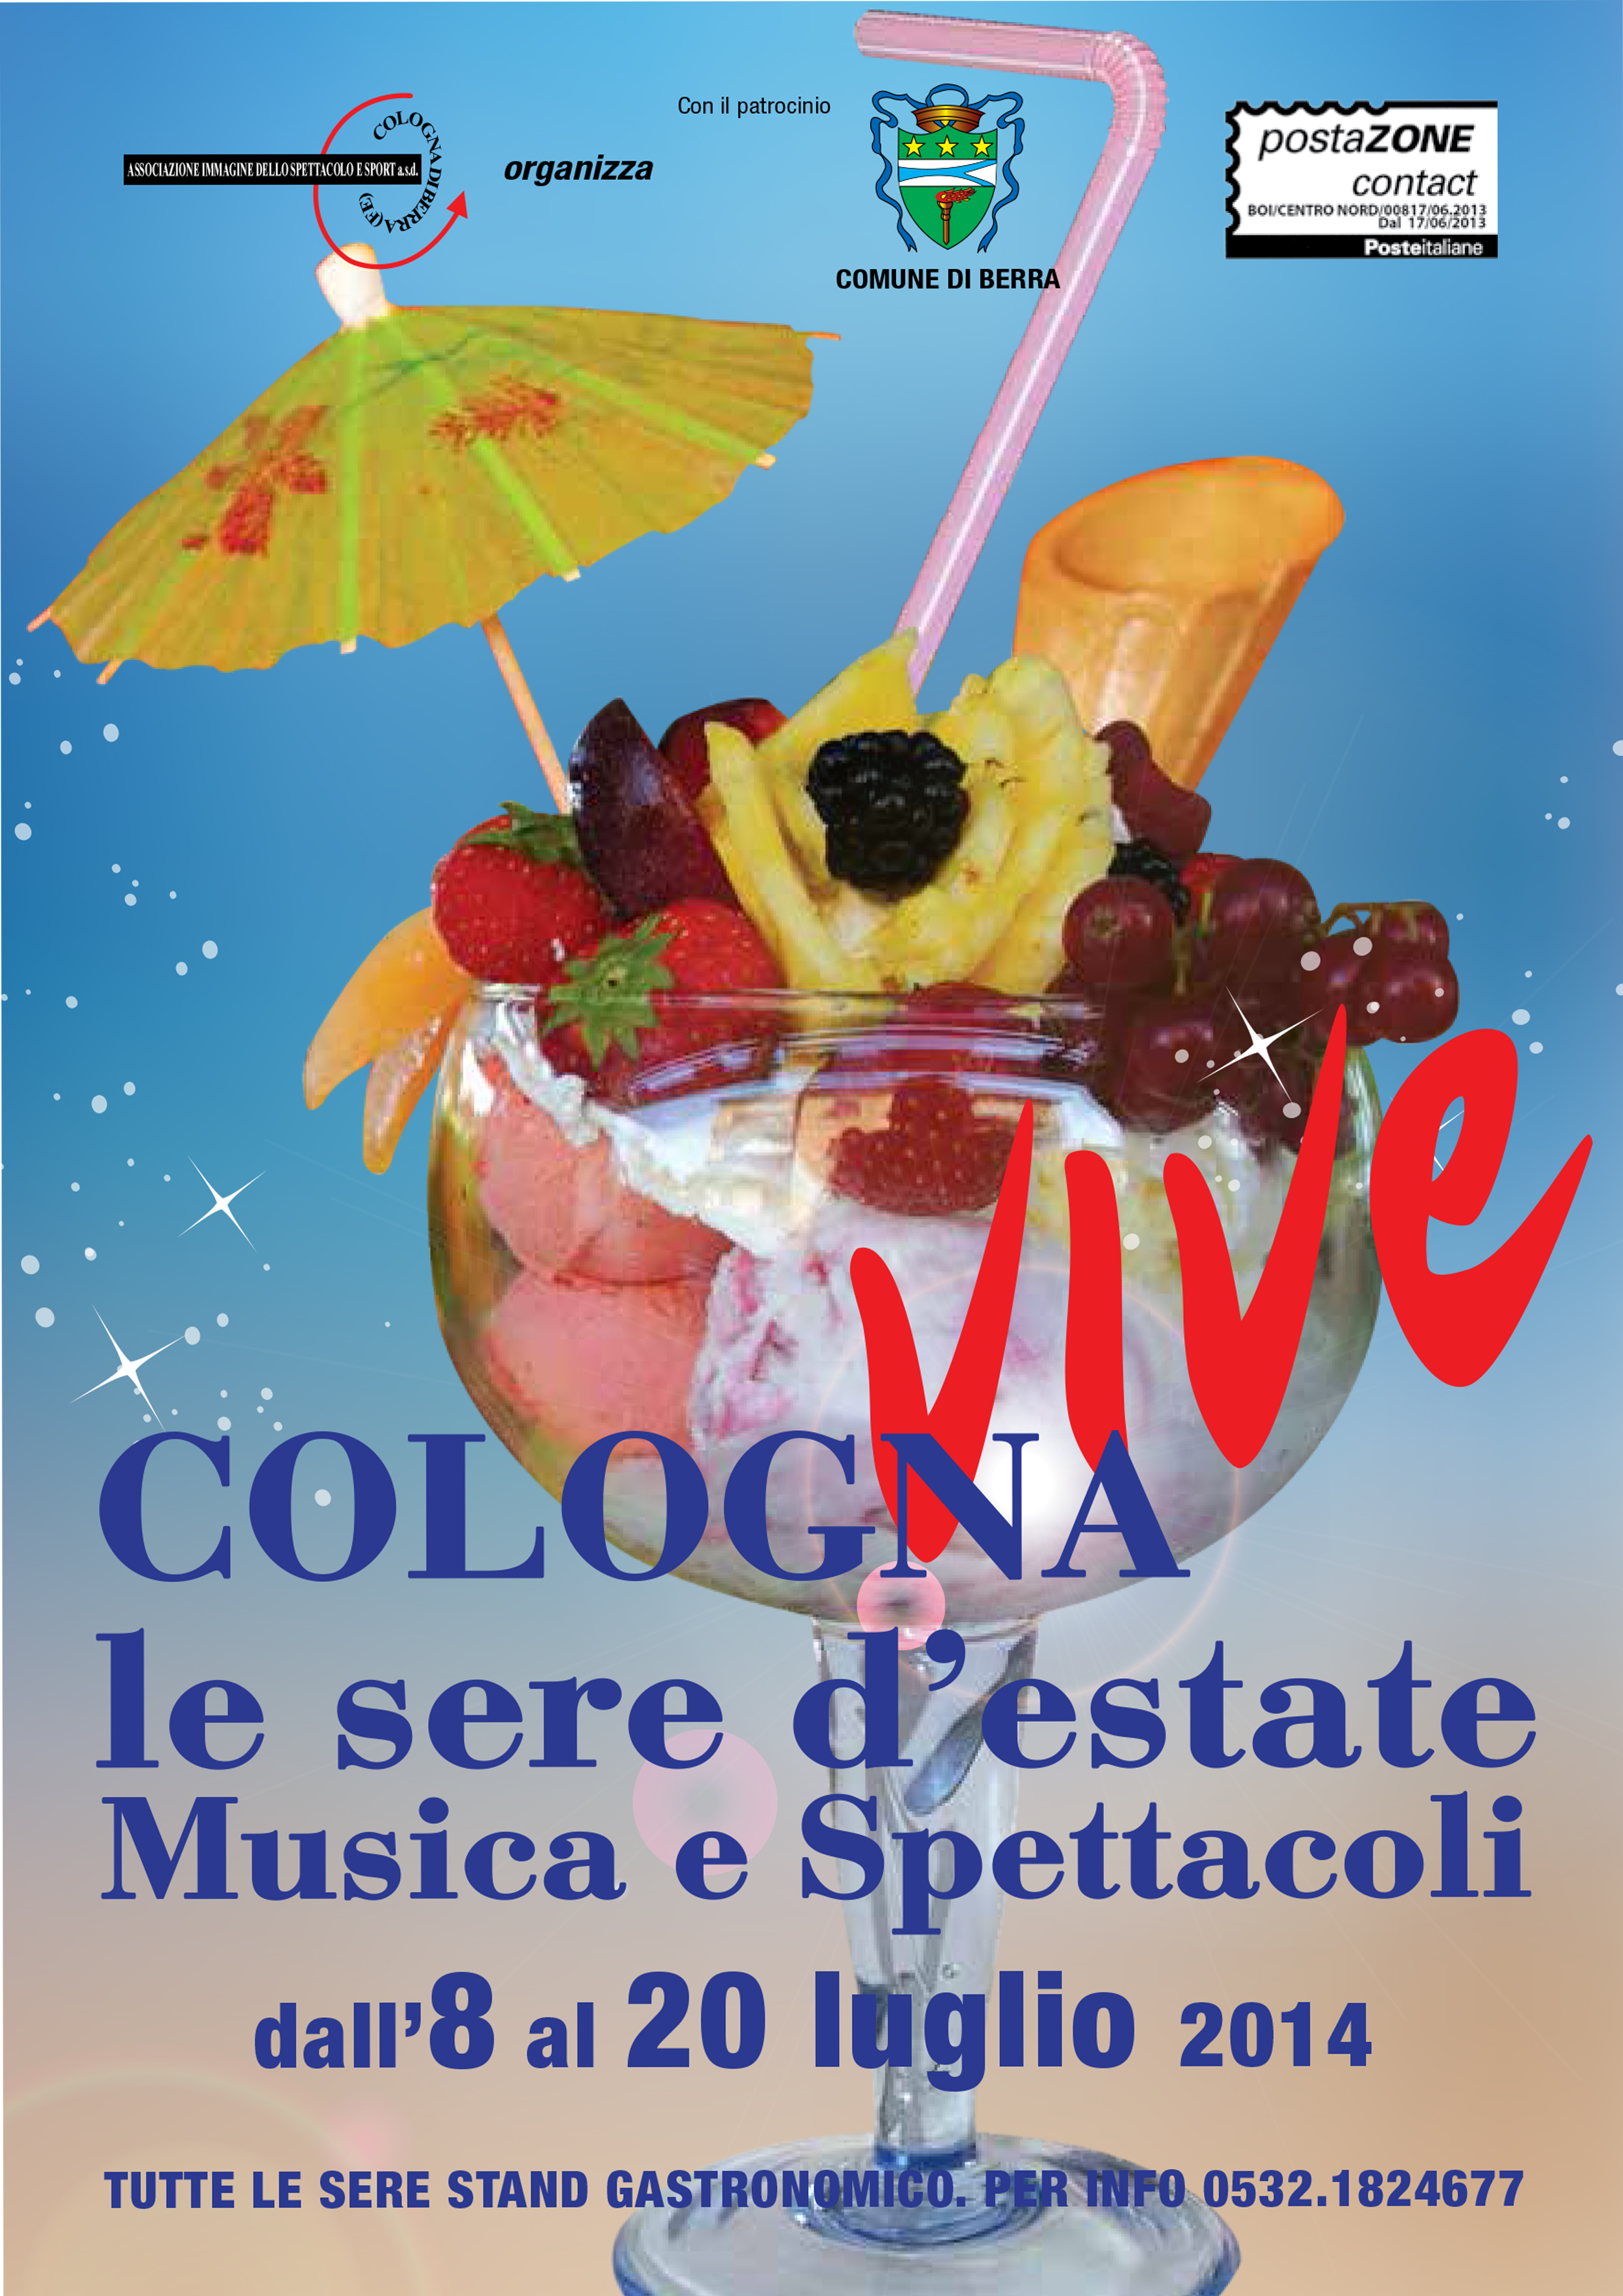 Locandina Cologna vive le sere d'estate 2014